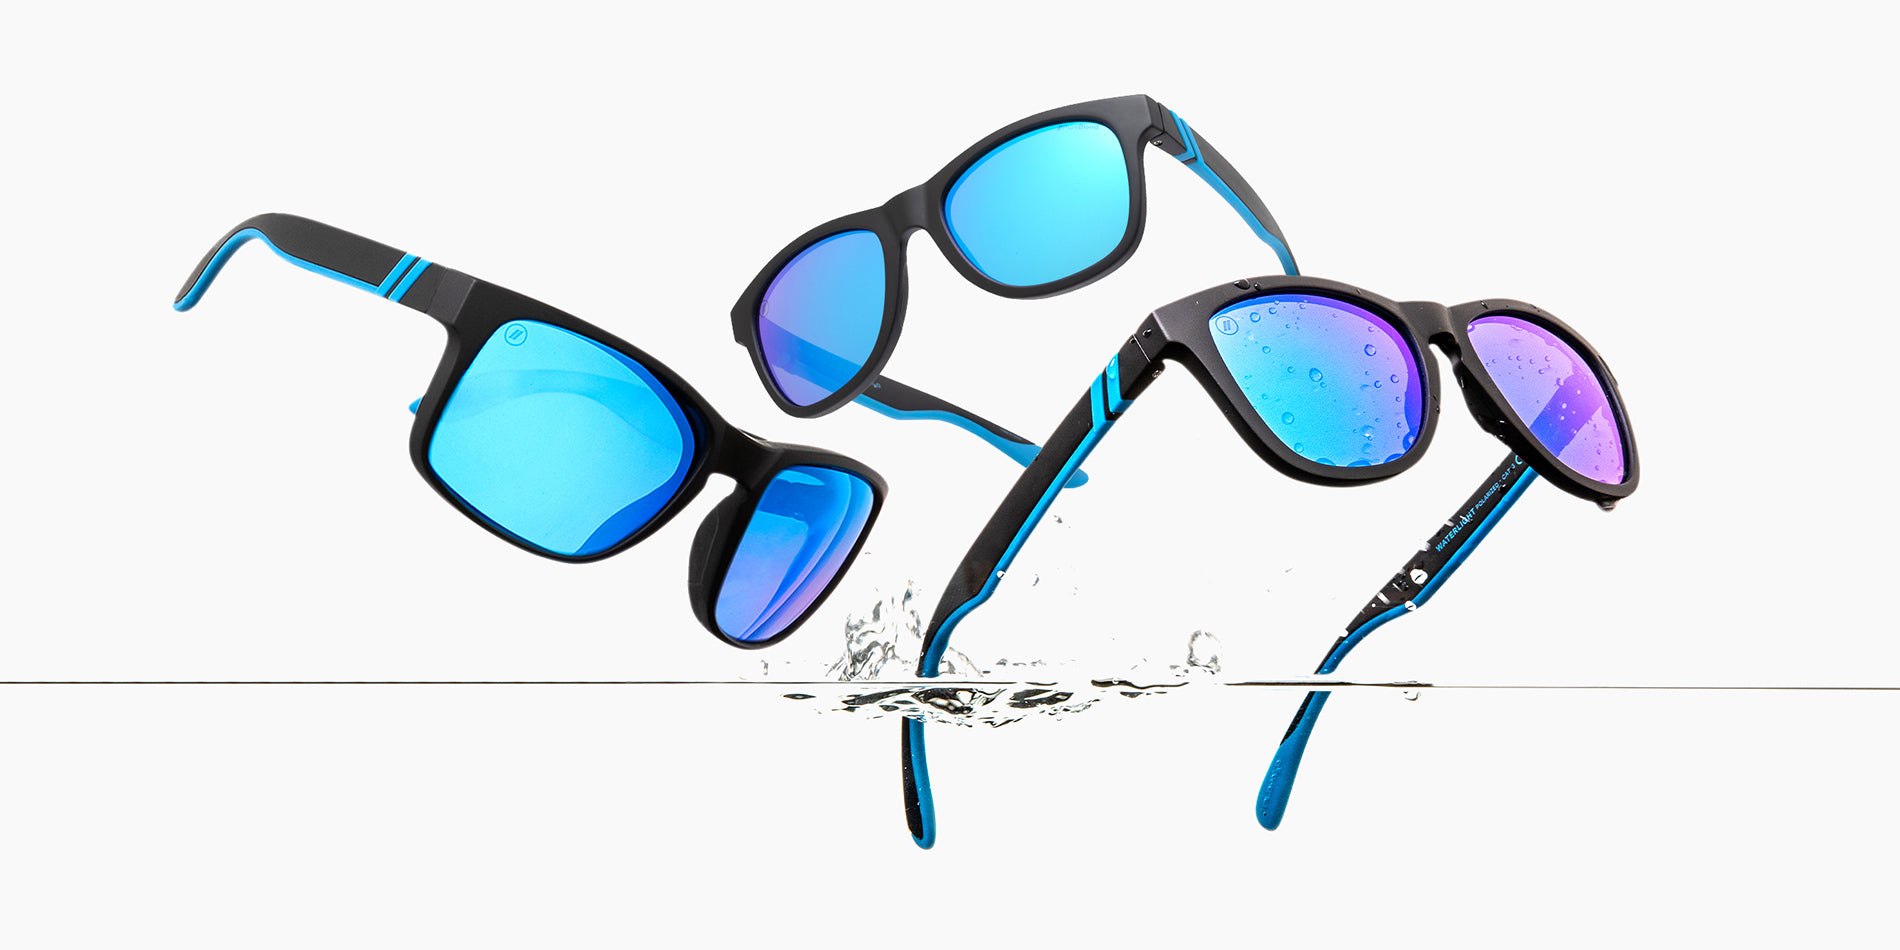 Float₂O Floating Sunglasses - Floating Polarized Sunglasses for